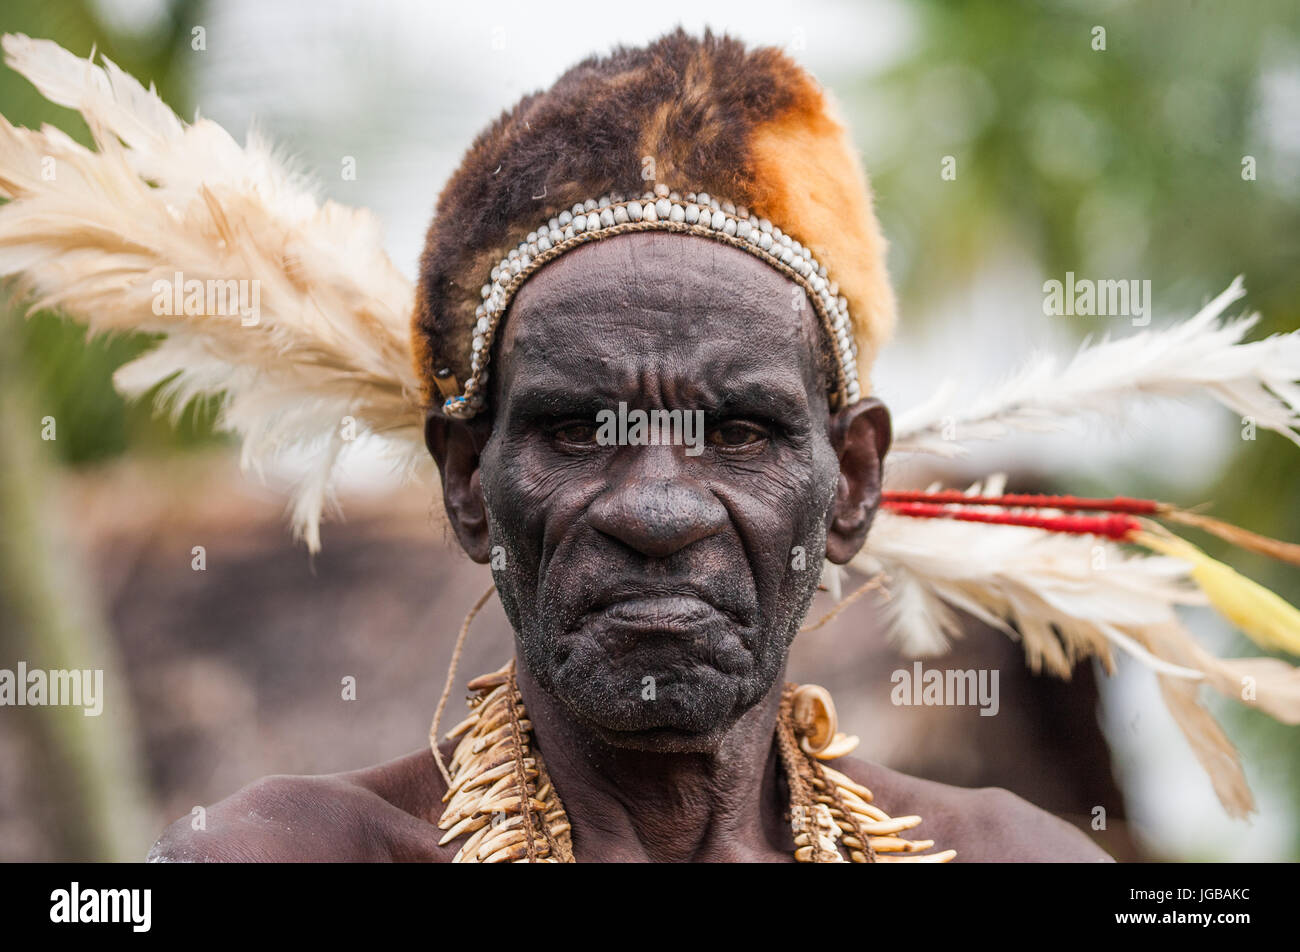 Indonesien, IRIAN JAYA, ASMAT Provinz, JOW Dorf - Juni 12: Porträt eines Mannes Asmat-Stammes. Stockfoto